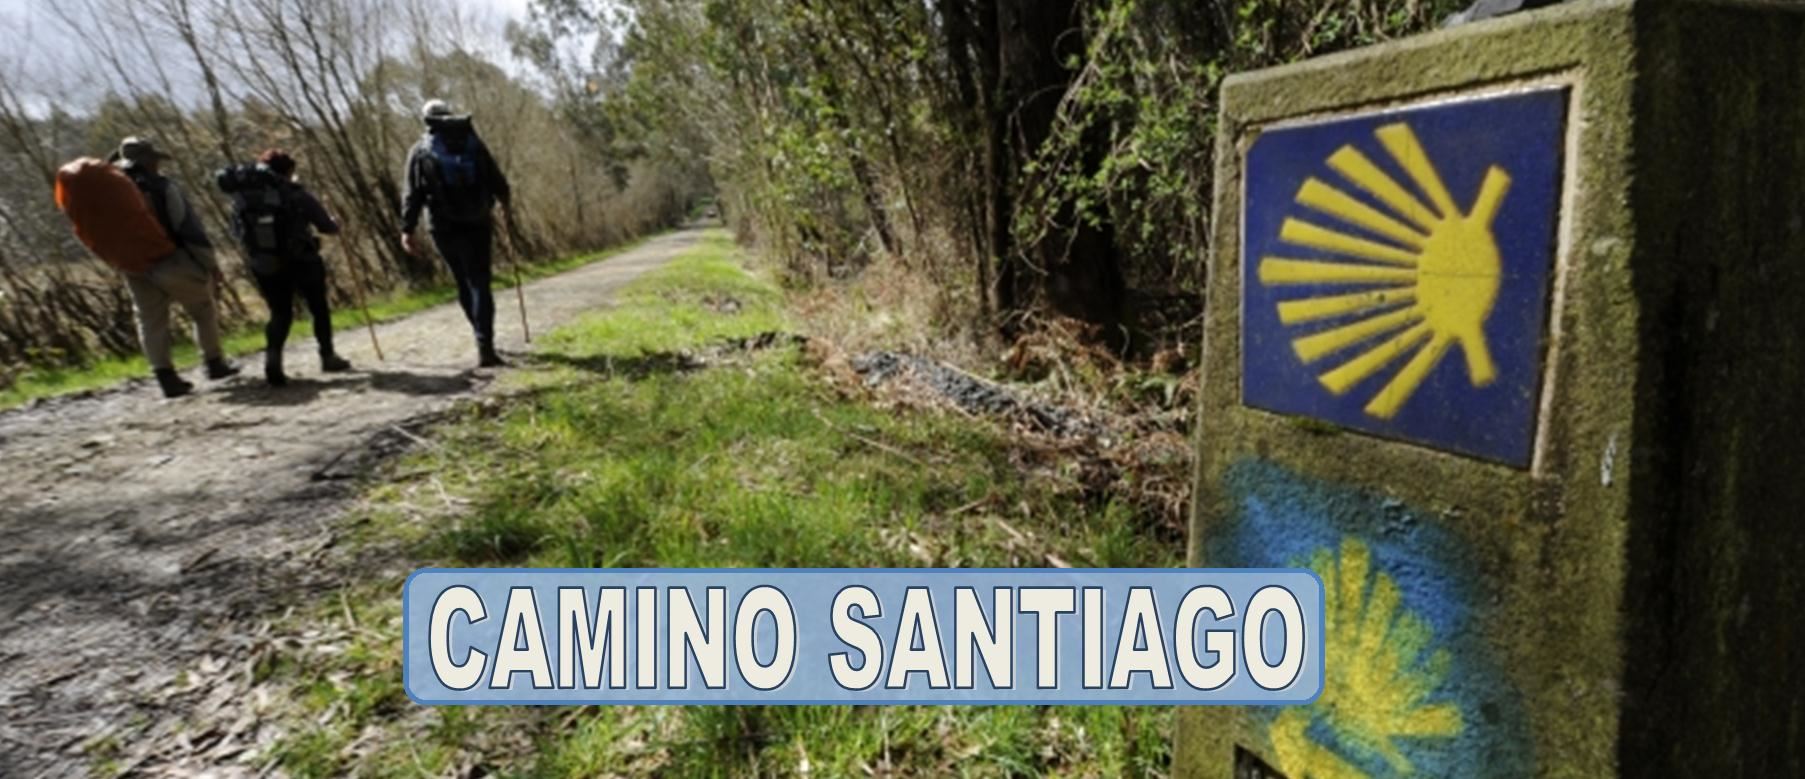 CAMINO DE SANTIAGO - CAMINO DE SANTIAGO ORGANIZADO